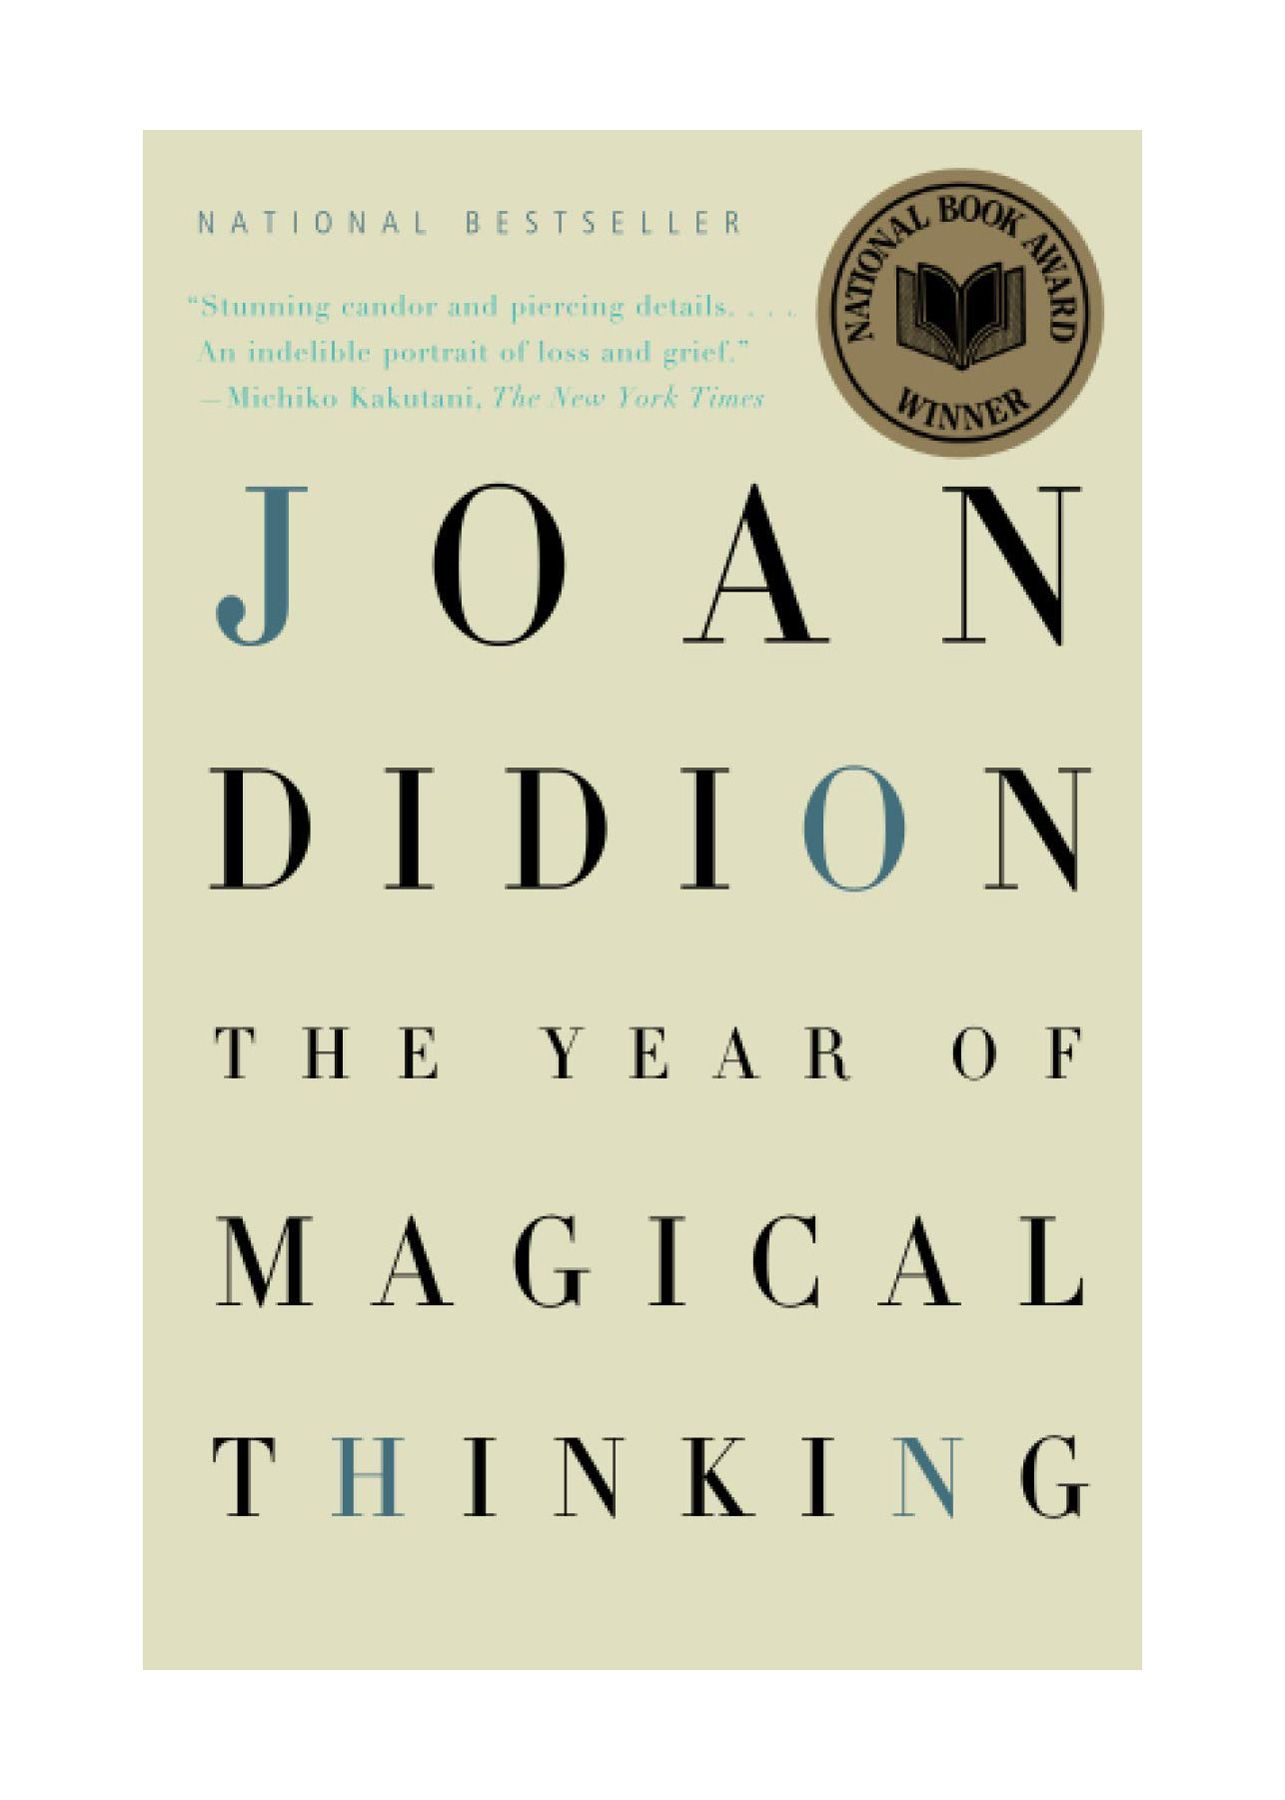 适合 20 多岁阅读的好书：琼·迪迪翁 (Joan Didion) 的“神奇思维之年”